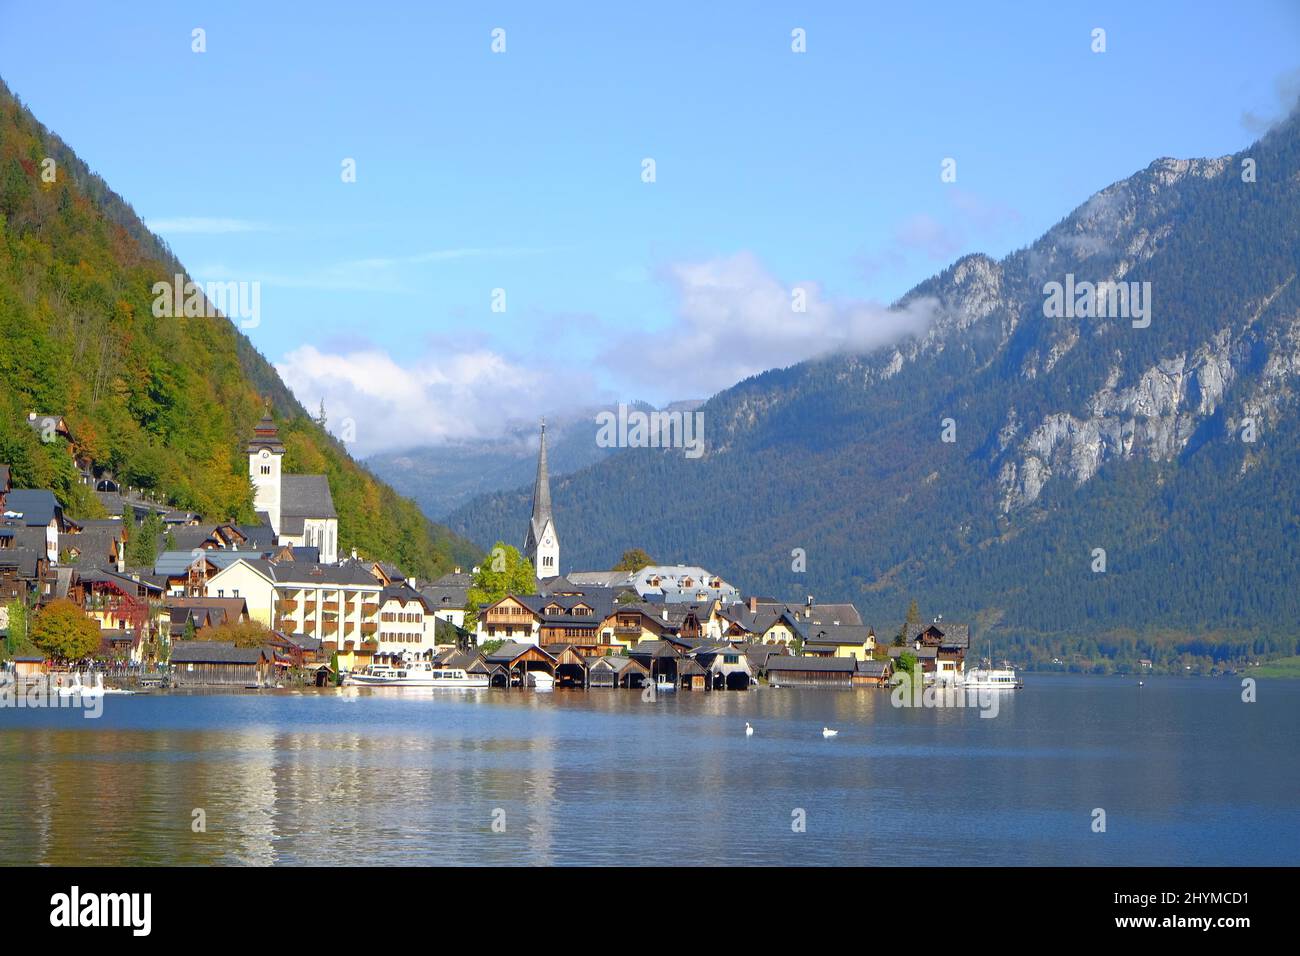 Reiseziel, Häuser am See in Hallstatt, Österreich Stockfoto